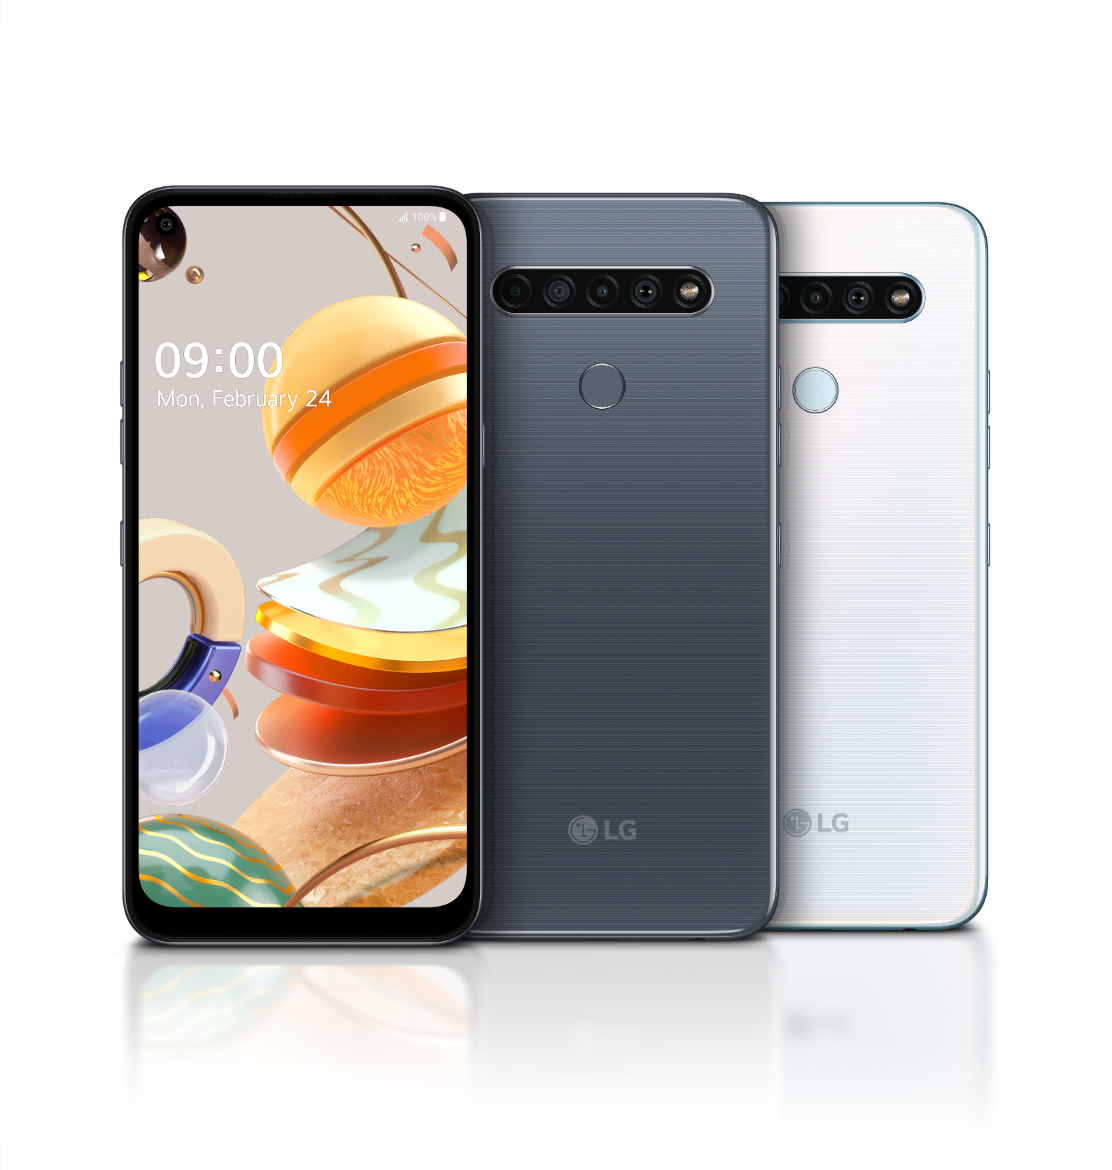 LG pristatė naujus K serijos telefonus - Keturios kameros ir ypatingas funkcijų paketas užtikrina geresnę multimedijos patirtį